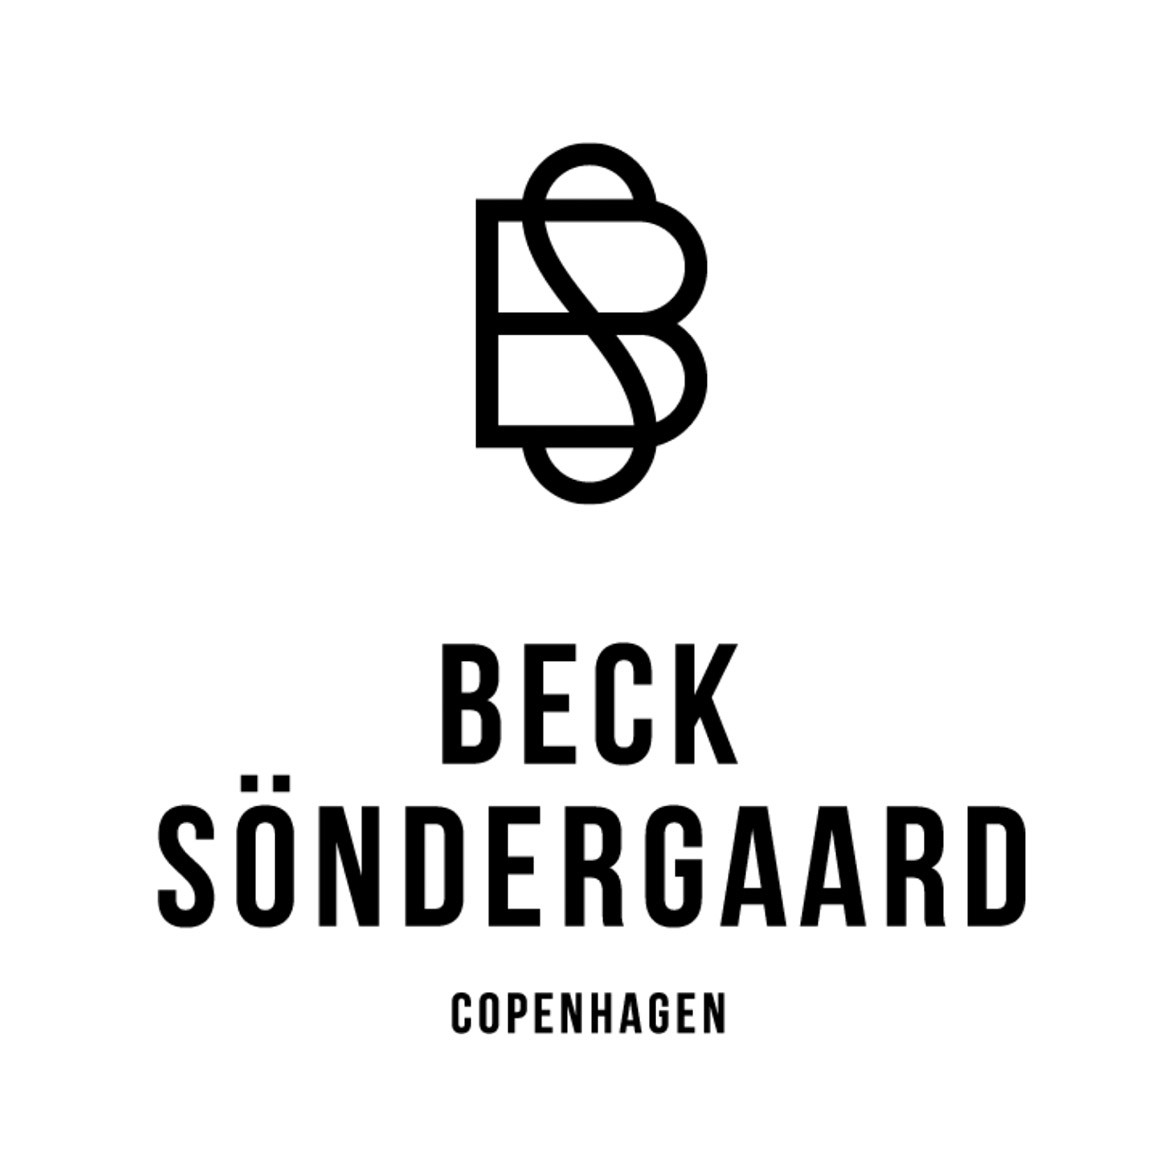 Becksondergaard